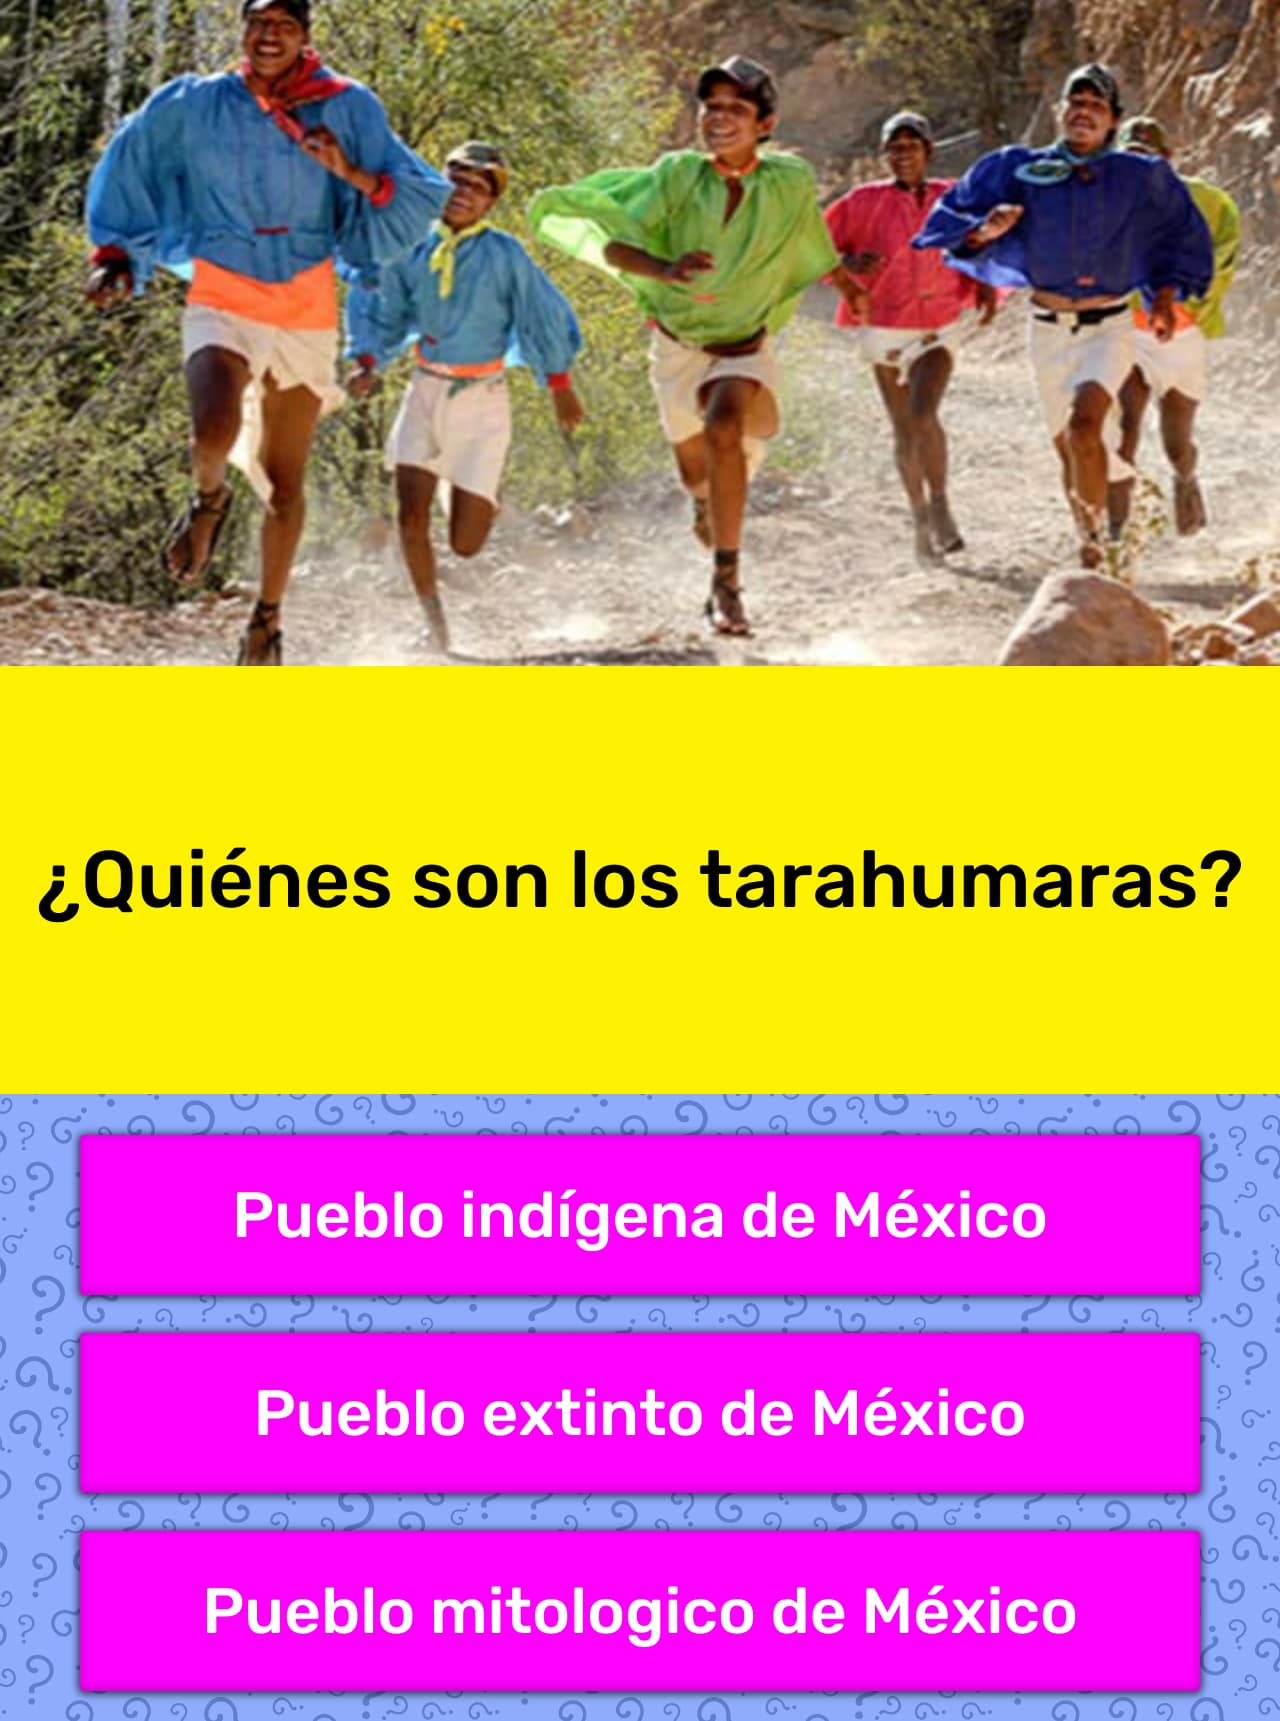 Quienes Son Los Tarahumaras La Respuesta De Trivia Quizzclub